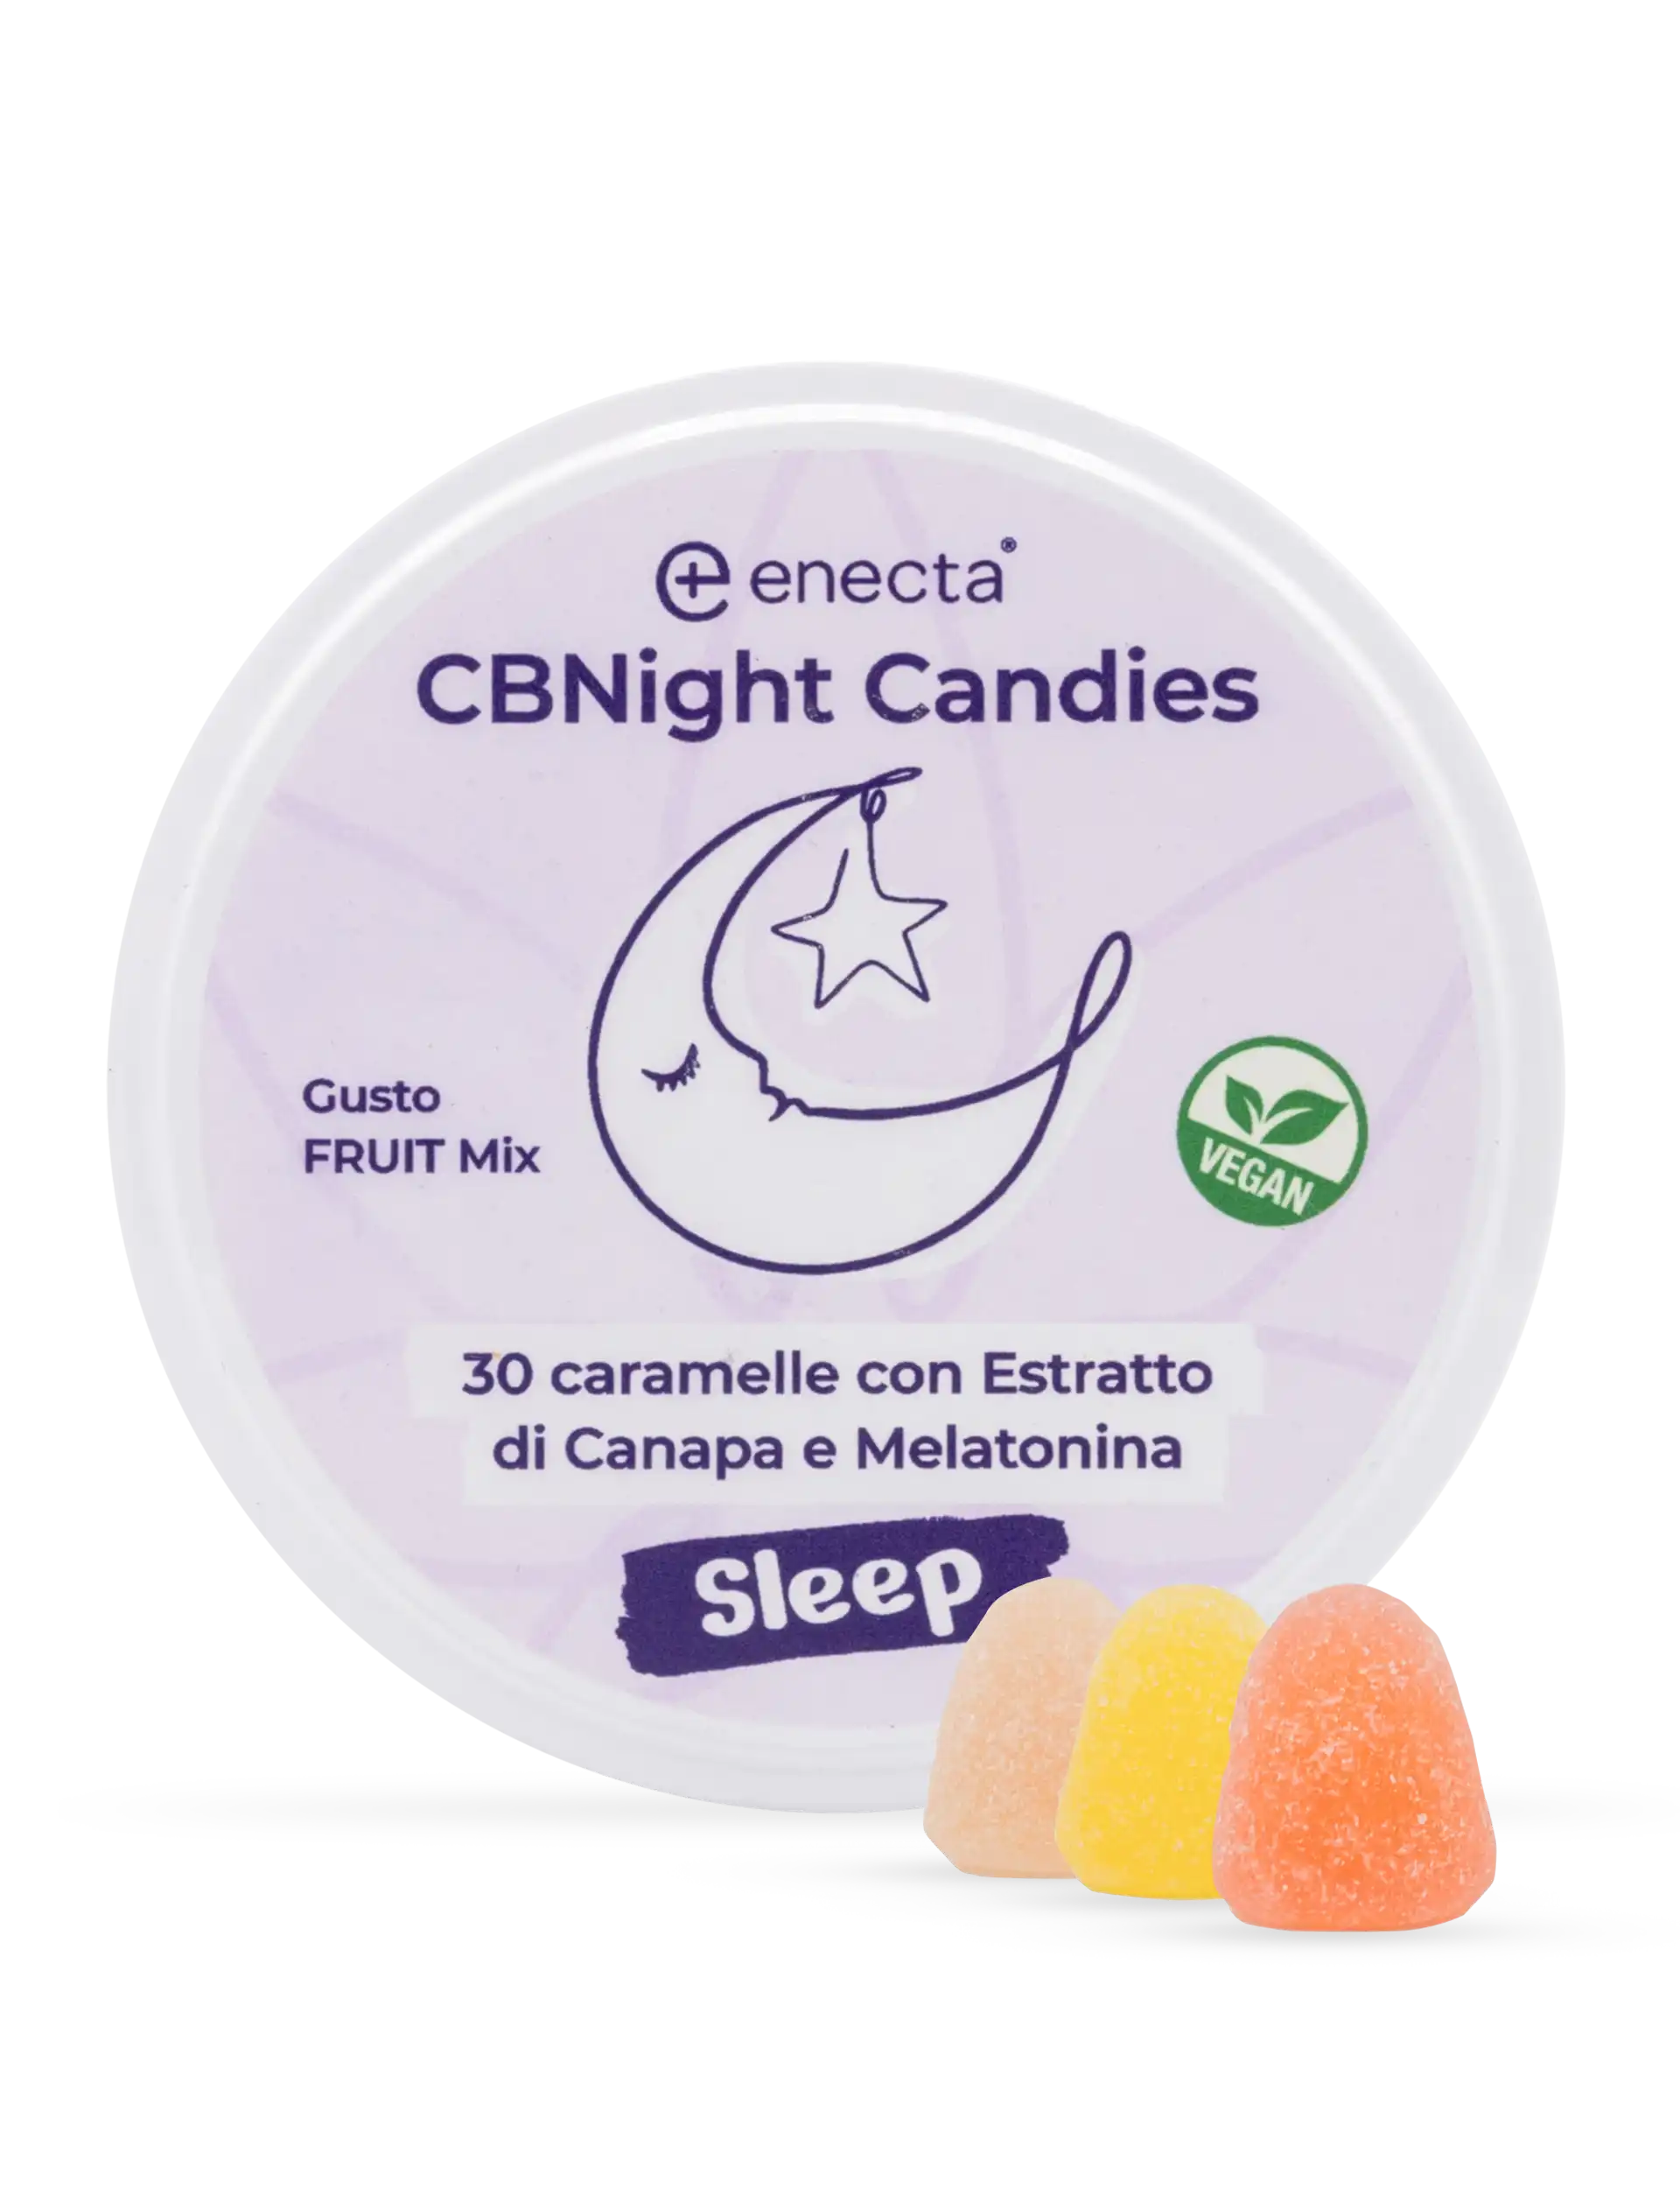 Caramelle per dormire, con CBD, CBN e melatonina